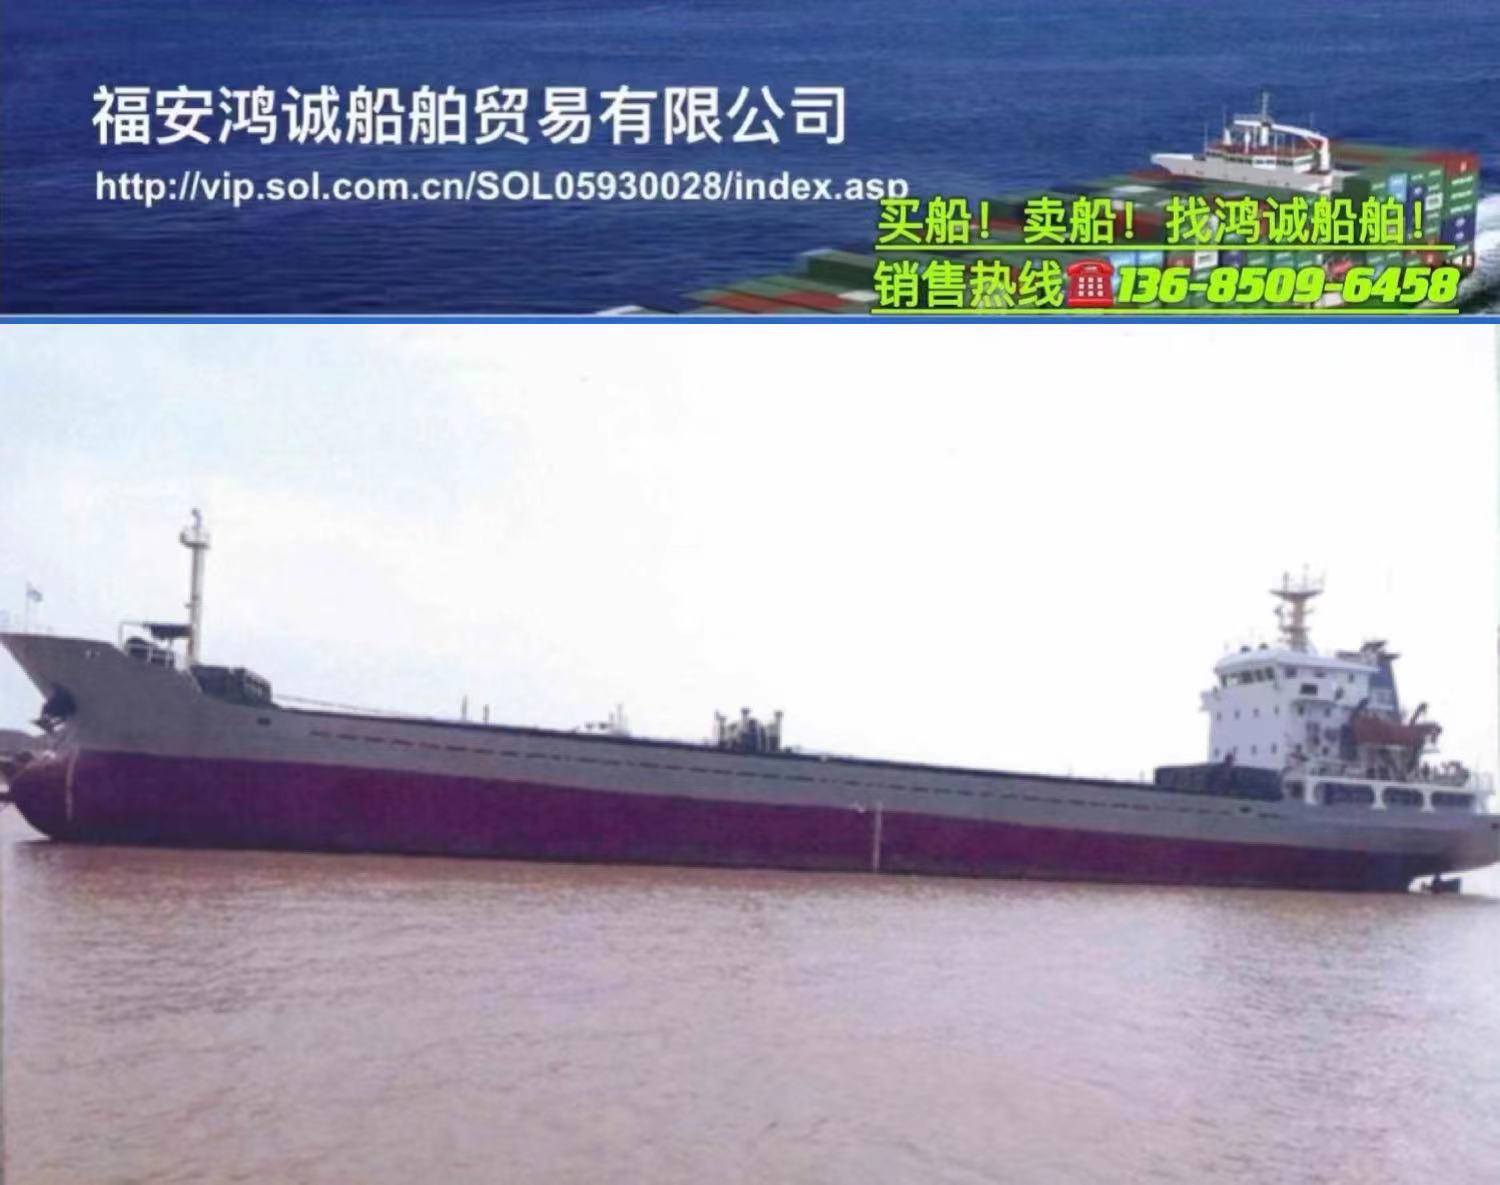 出售3400吨散货船： 2005年8月浙江温岭建造/